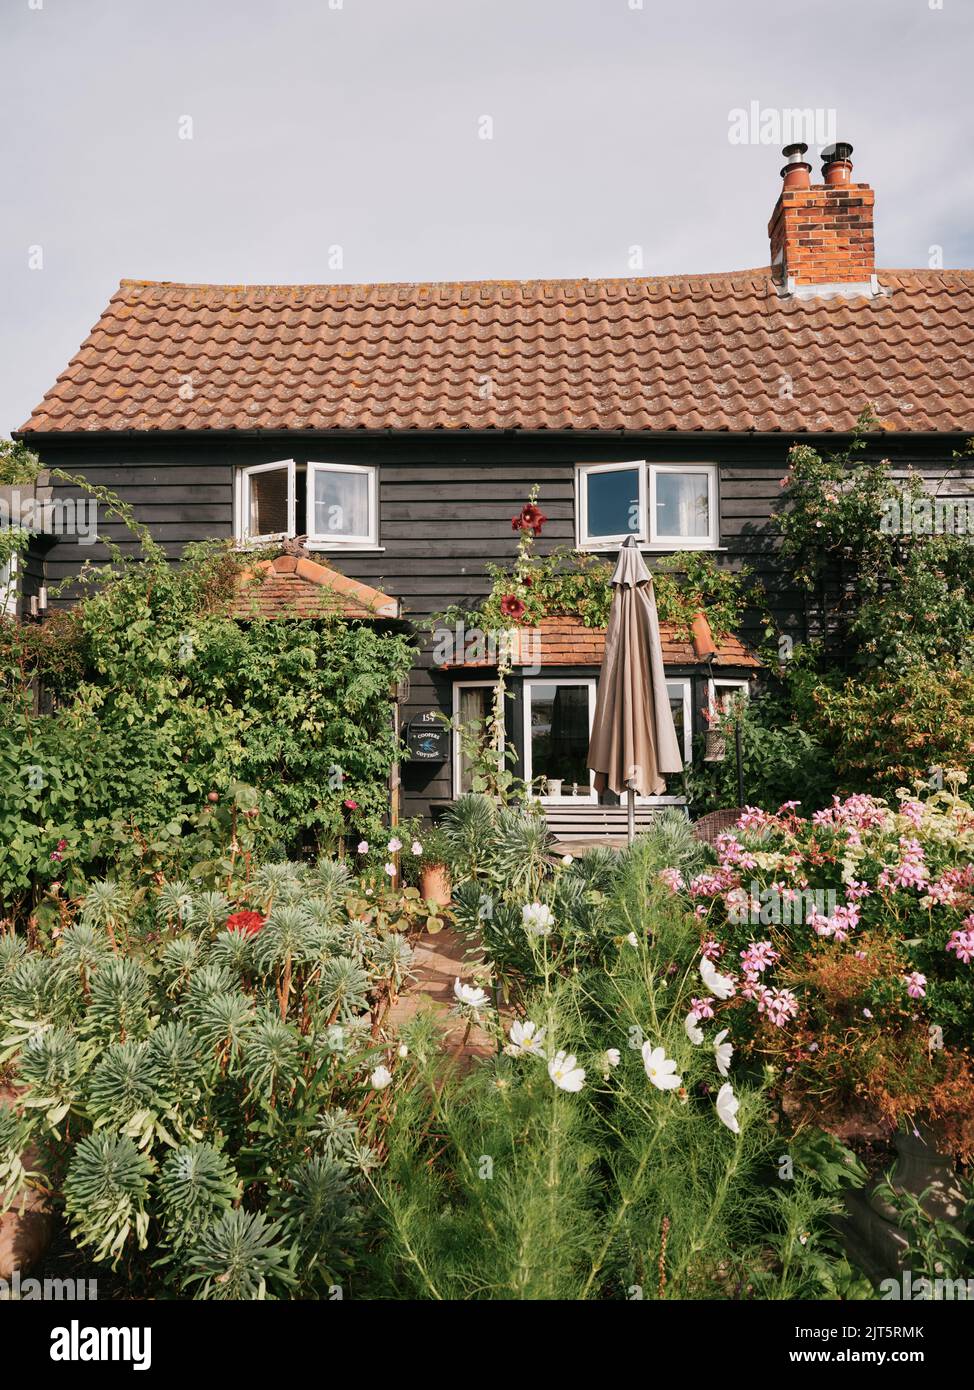 Die Strandhütte Architektur und Gärten von West Mersea, Mersea Island, Essex, England - Cottage Strandhütte Garten Stockfoto